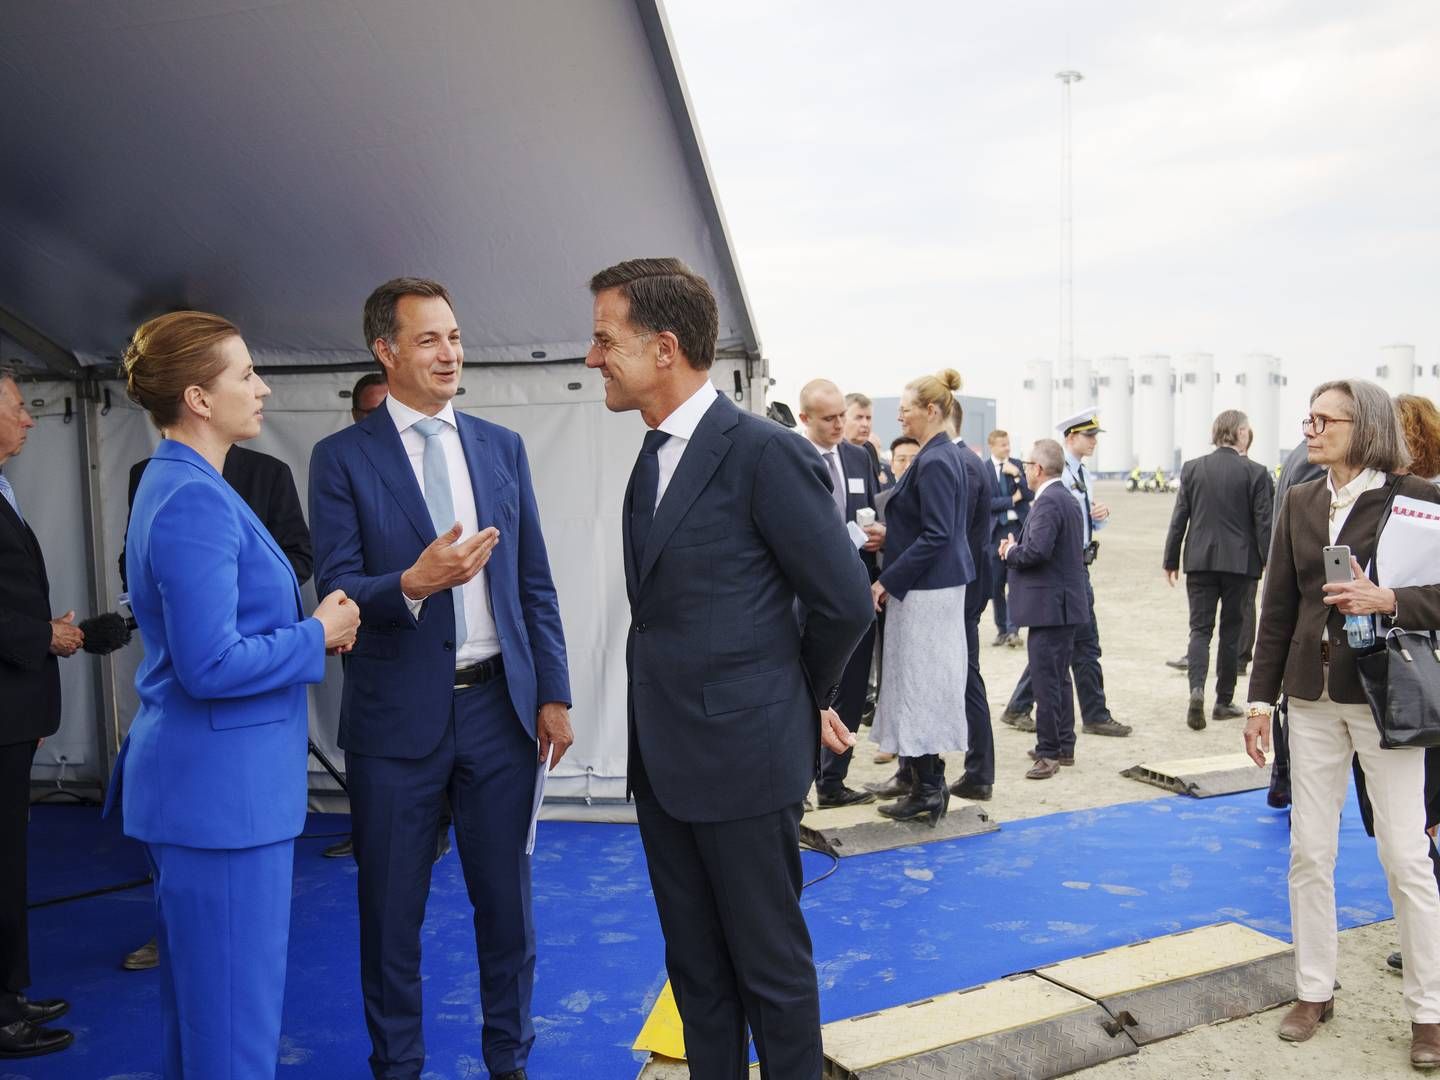 Hvis det står til statsminister Mette Frederiksen, skal den hårdt pressede vindindustri i Europa ikke bekymre sig om billige kinesiske vindkæmper i kampen om kommende havvindmølleparker i Nordsøen. | Foto: Bo Amstrup / Ritzau Scanpix/Bo Amstrup